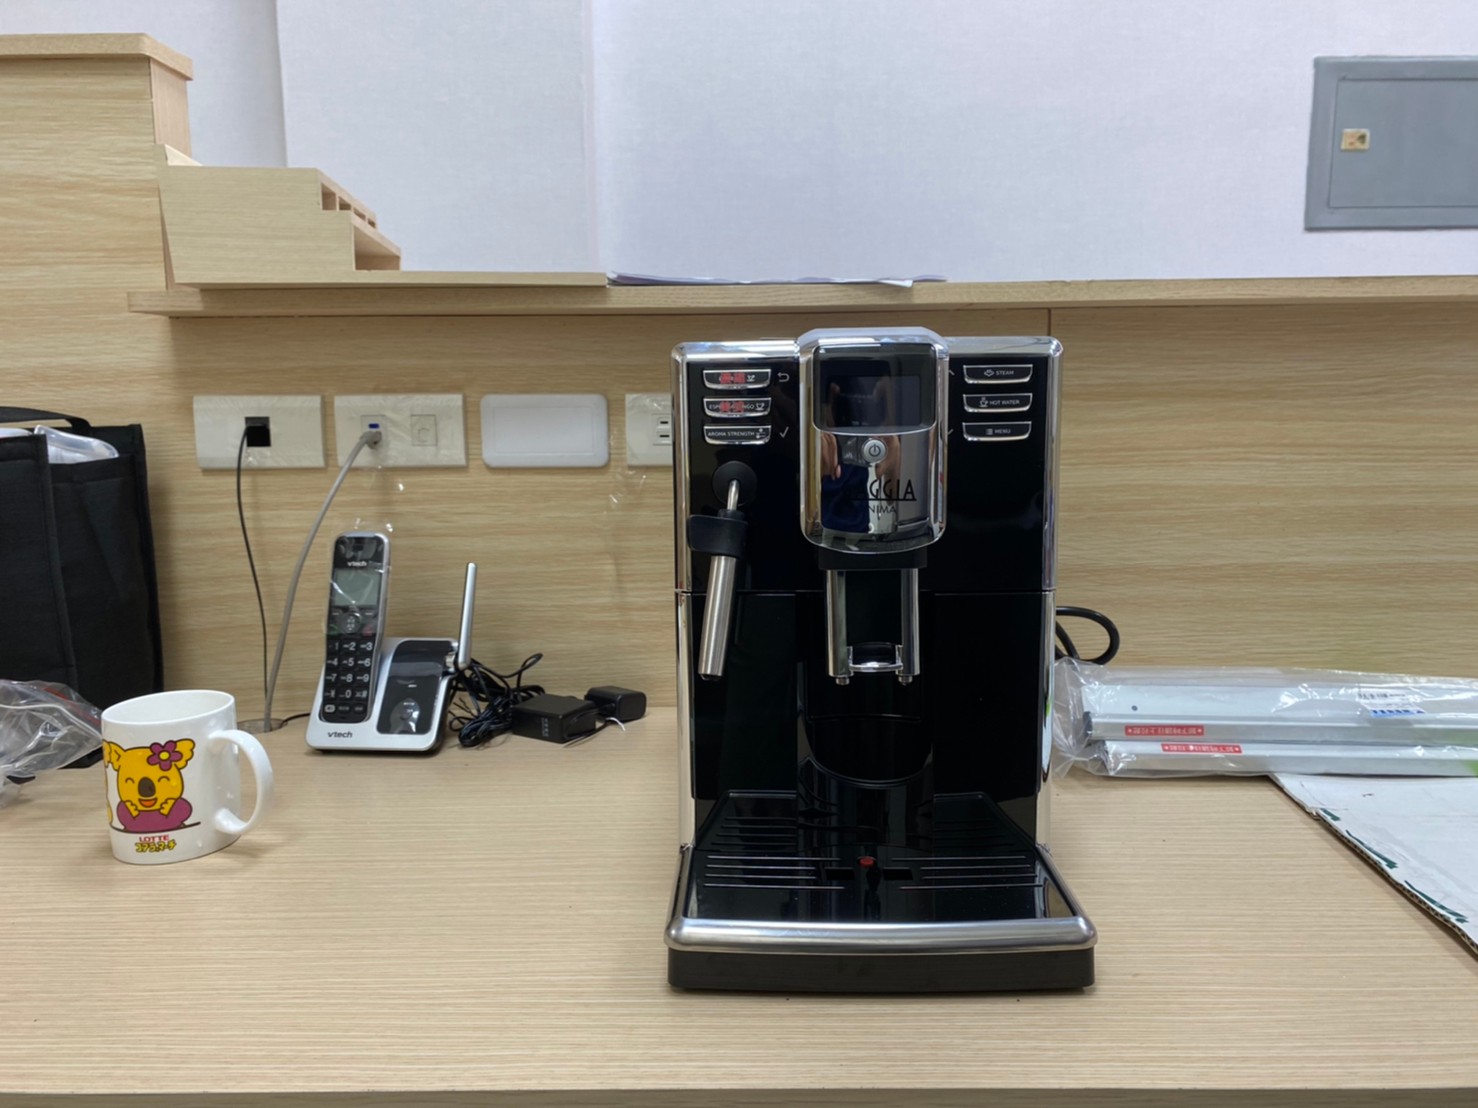 高雄 鳳山區 早餐店 咖啡機 全自動 義式咖啡 咖啡機租賃 維修 保養